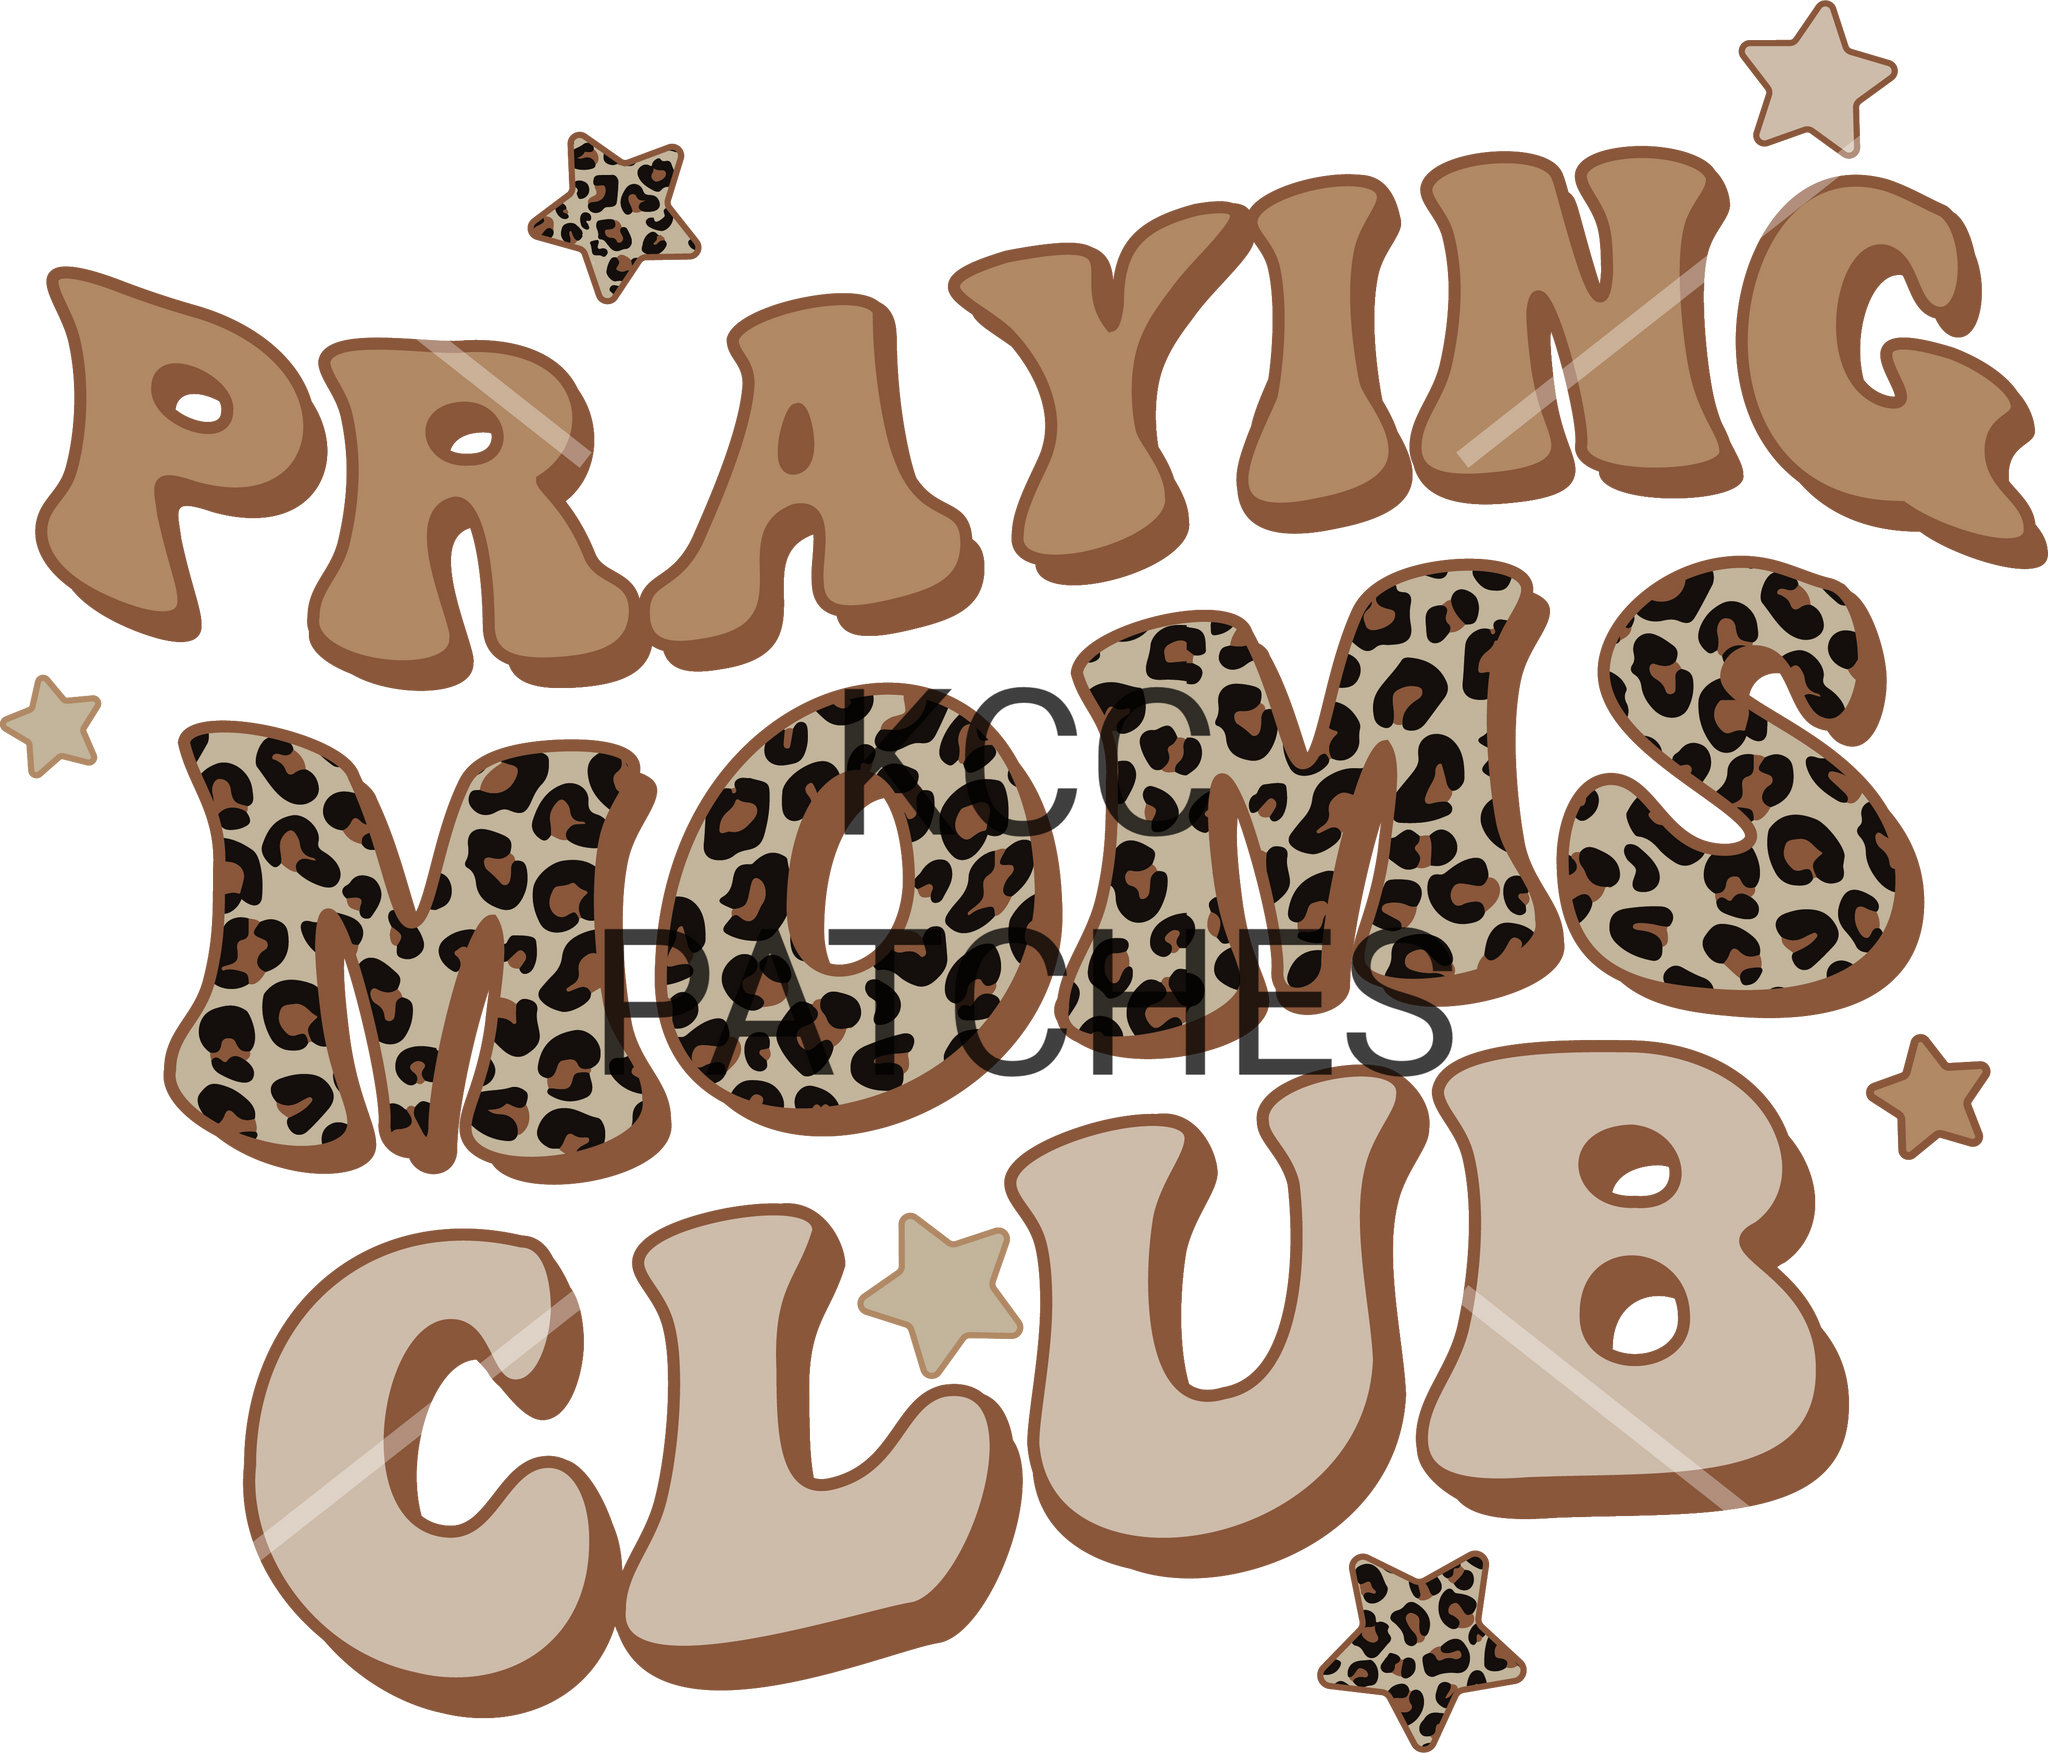 PRAYING MOM'S CLUB